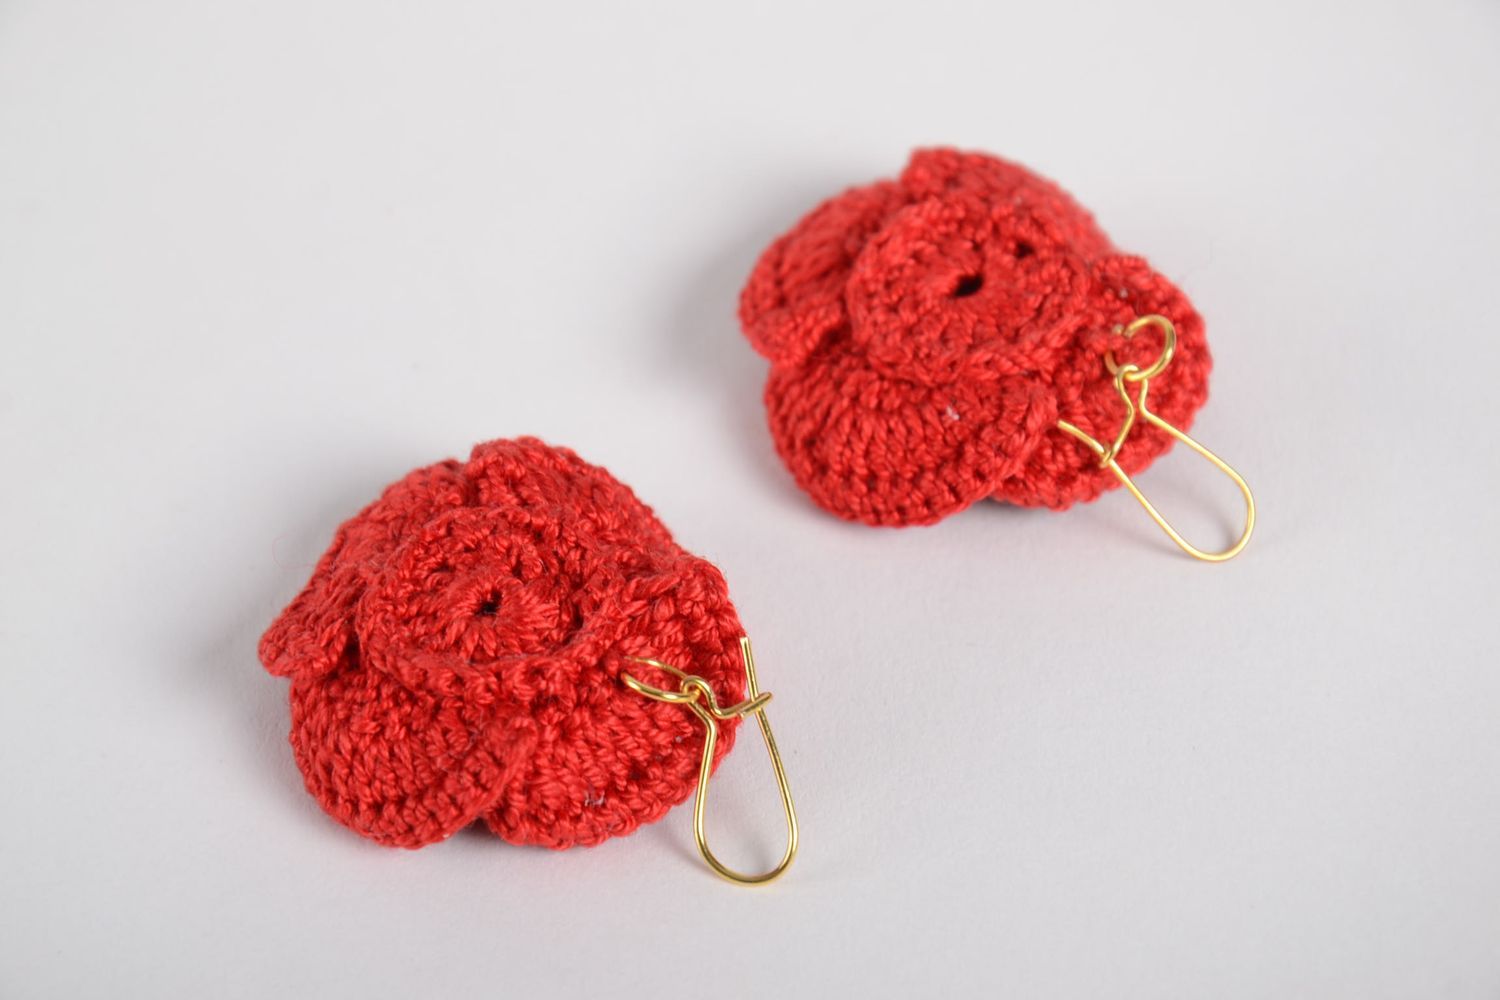 Unusual handmade flower earrings crochet ideas textile earrings small gifts photo 9